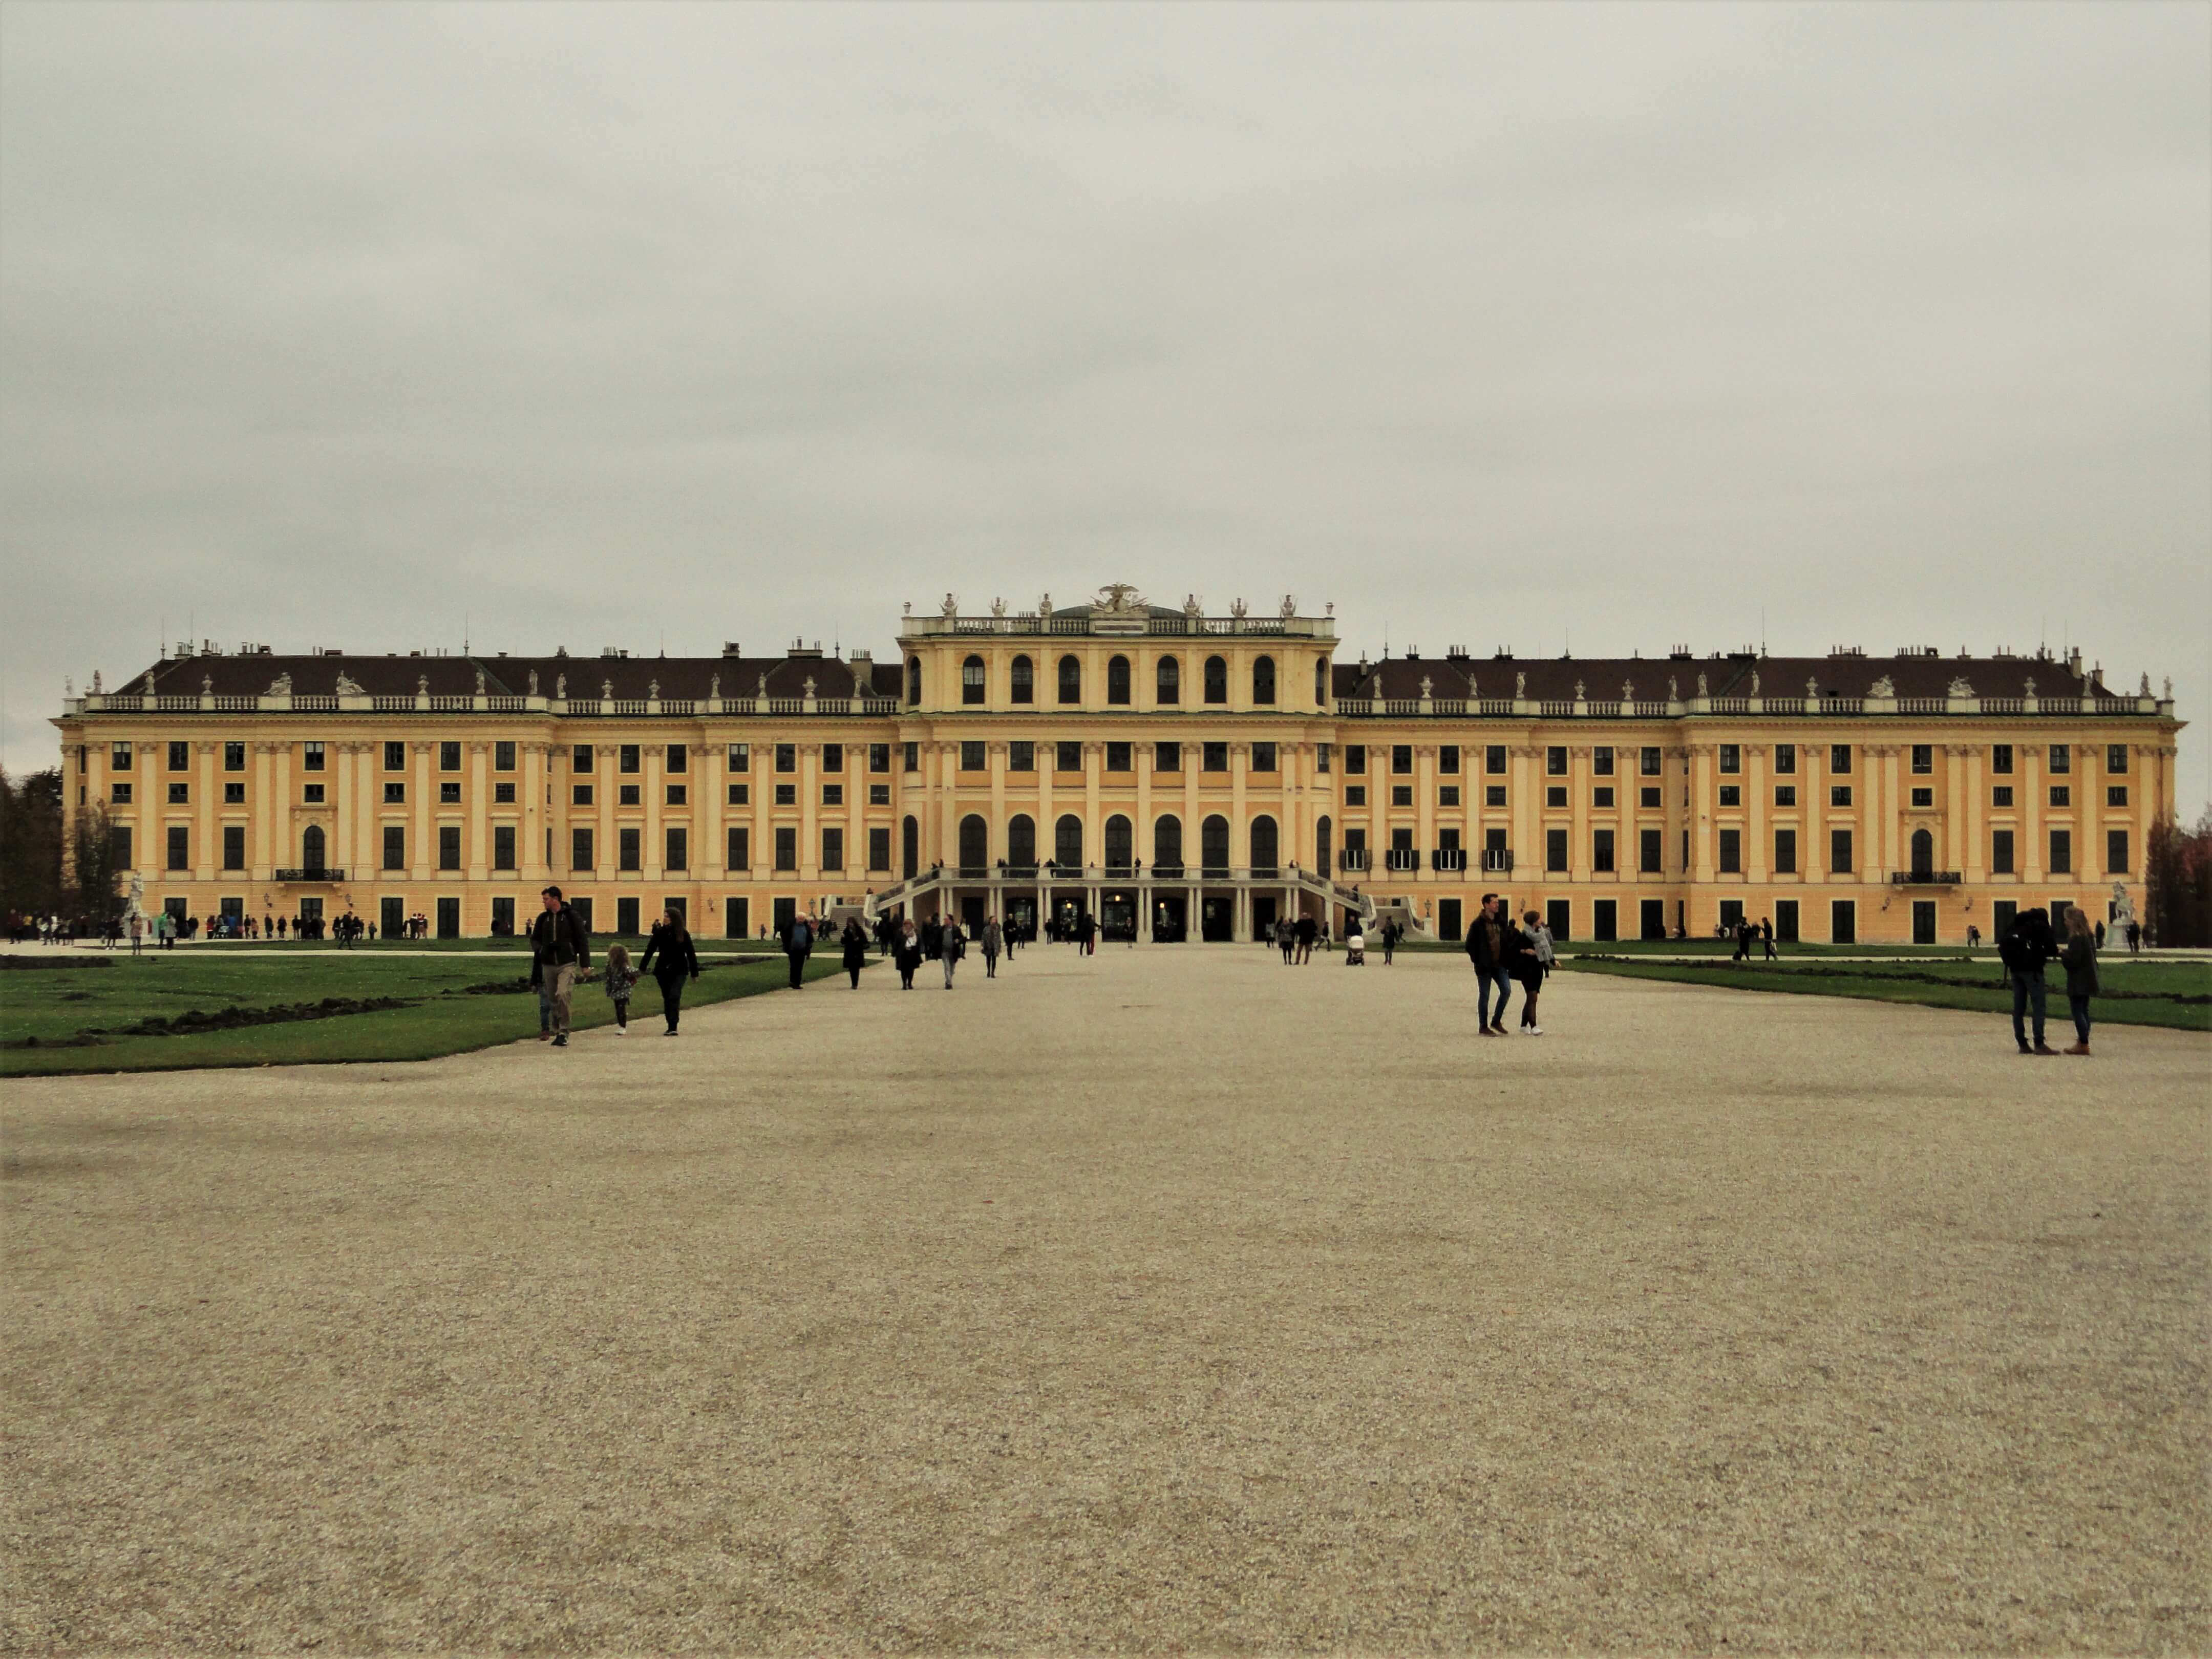 Schonbrunn palace in Vienna